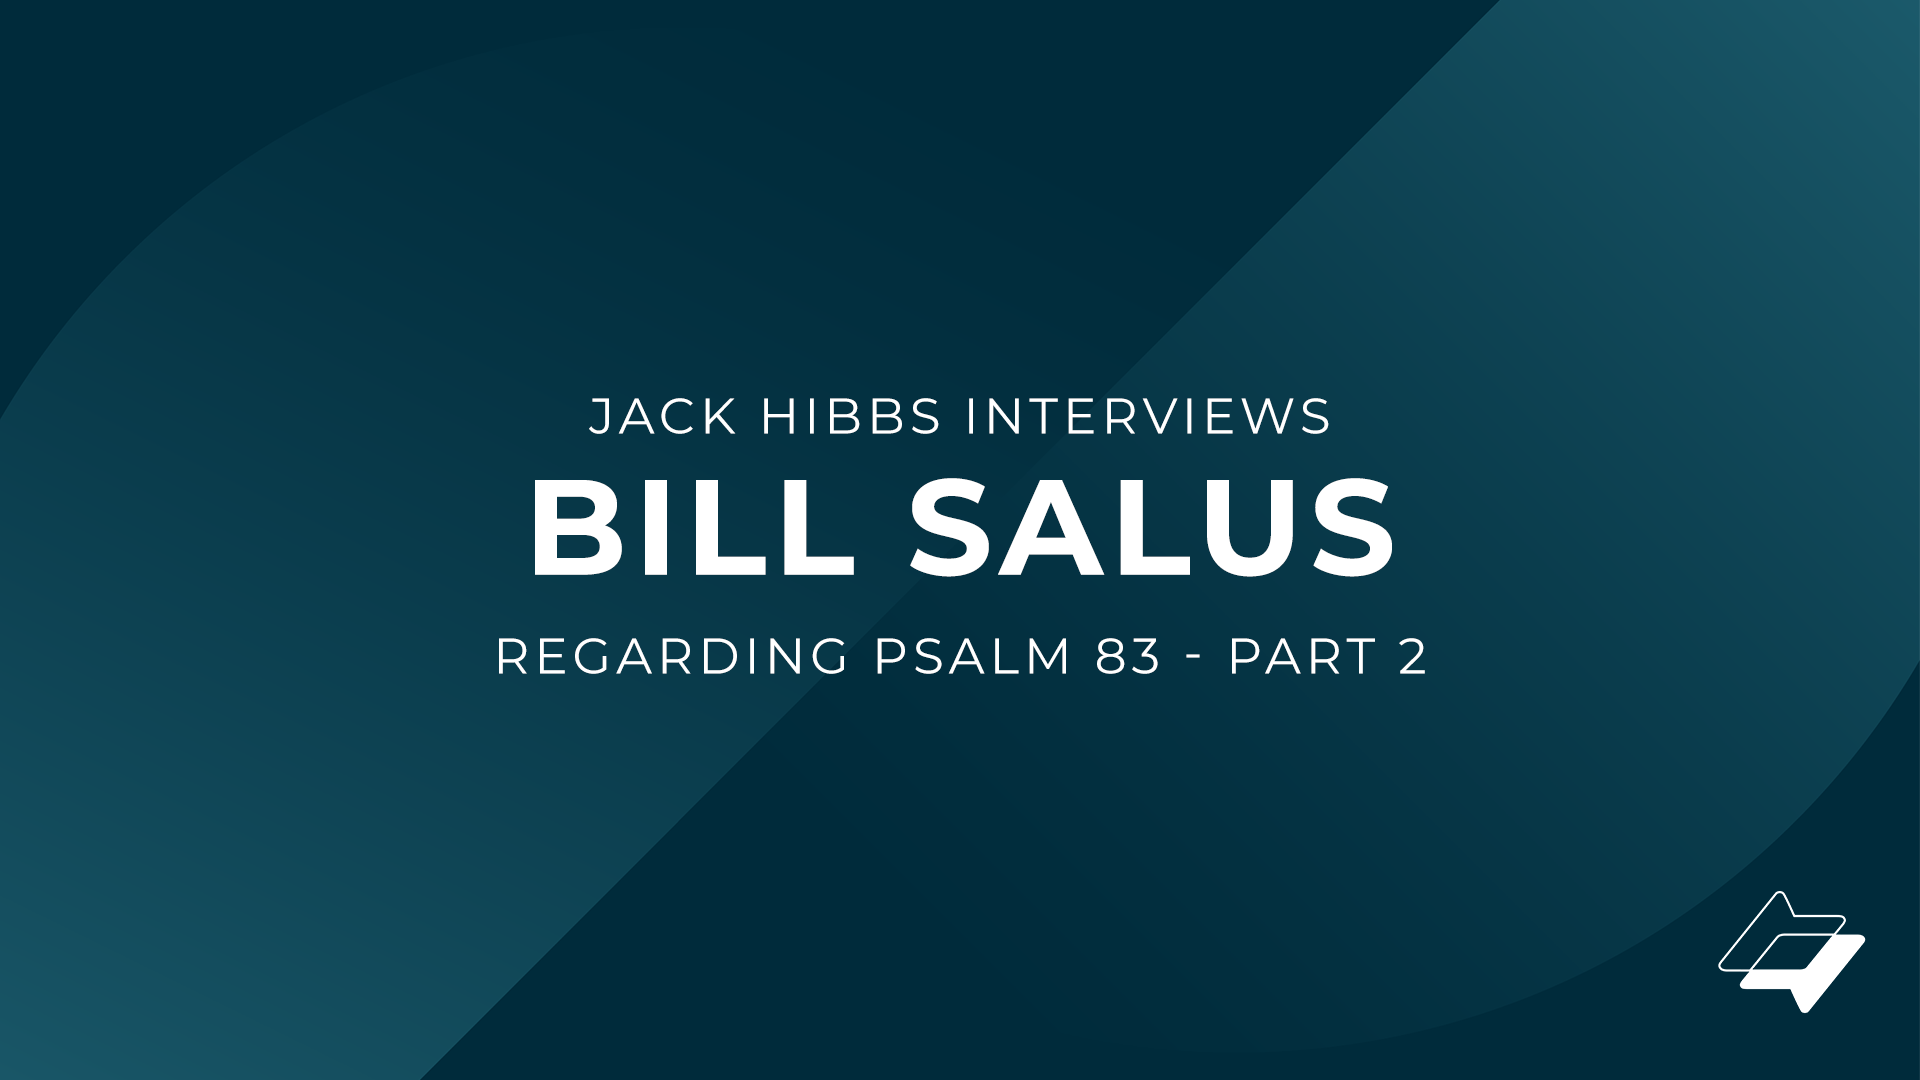 Jack Hibbs interviews Bill Salus regarding Psalm 83 – Part 2